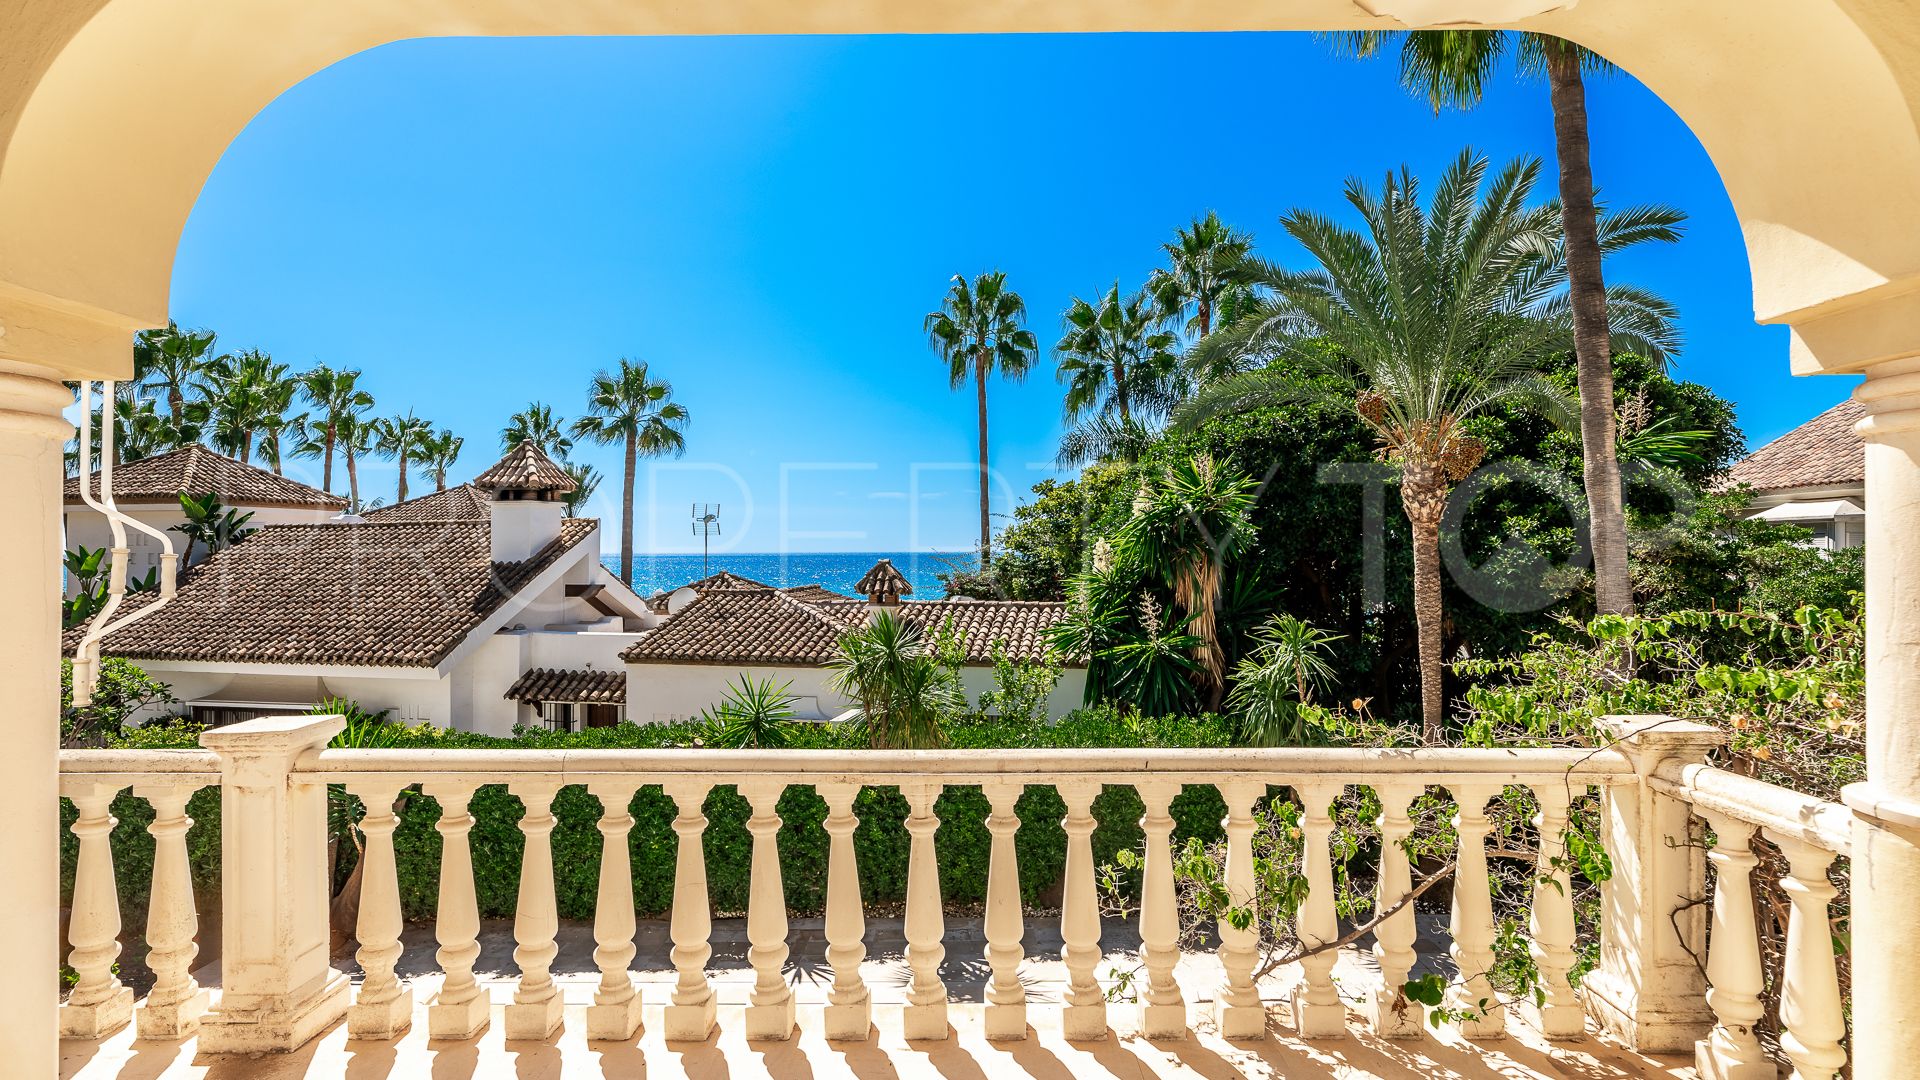 5 bedrooms villa in Bahia de Marbella for sale